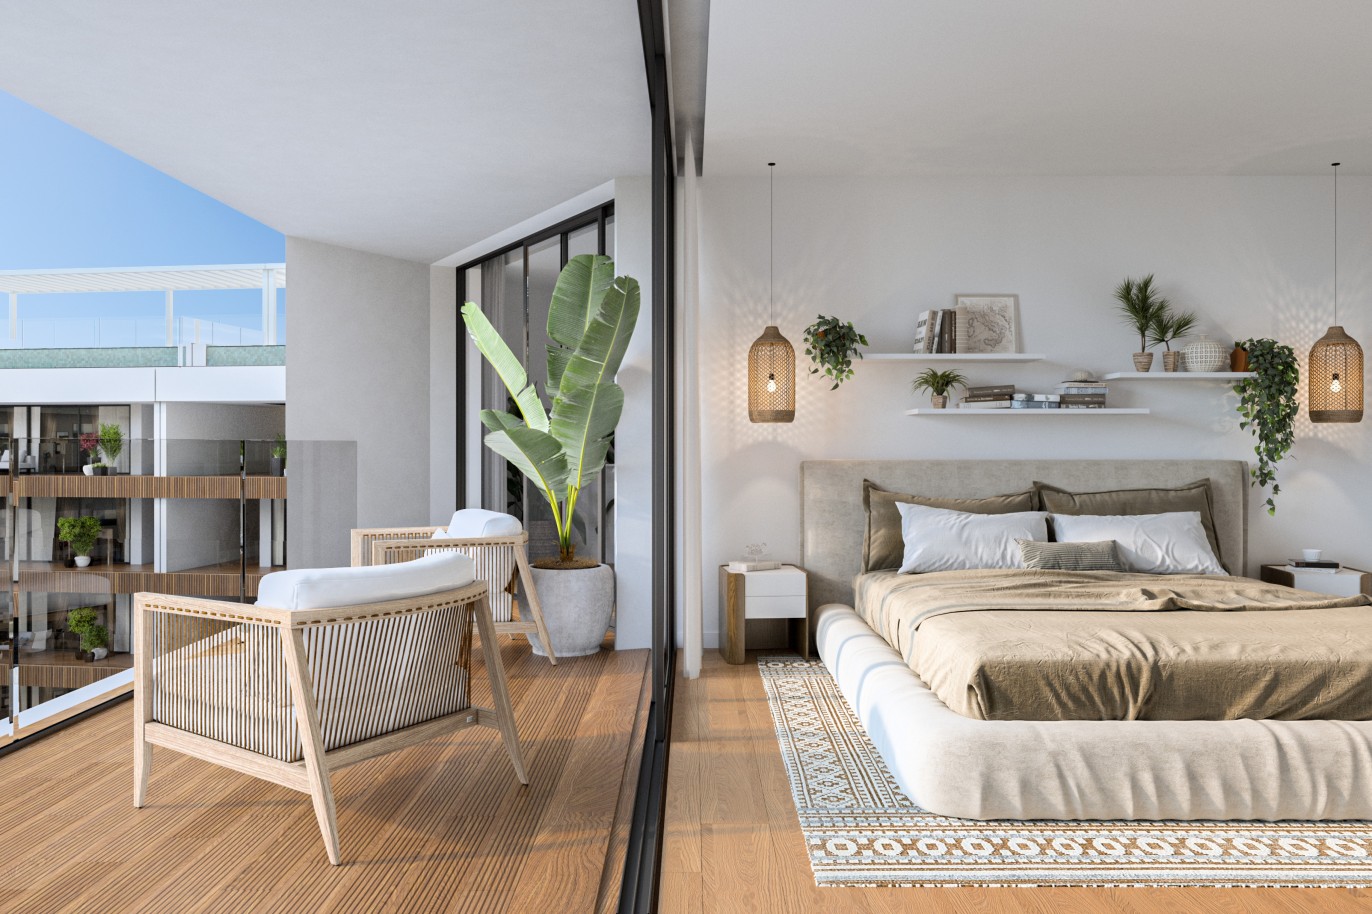 Appartements neufs avec vue sur mer, 1, 2 & 3 chambres, à vendre à Olhão, Algarve_244113